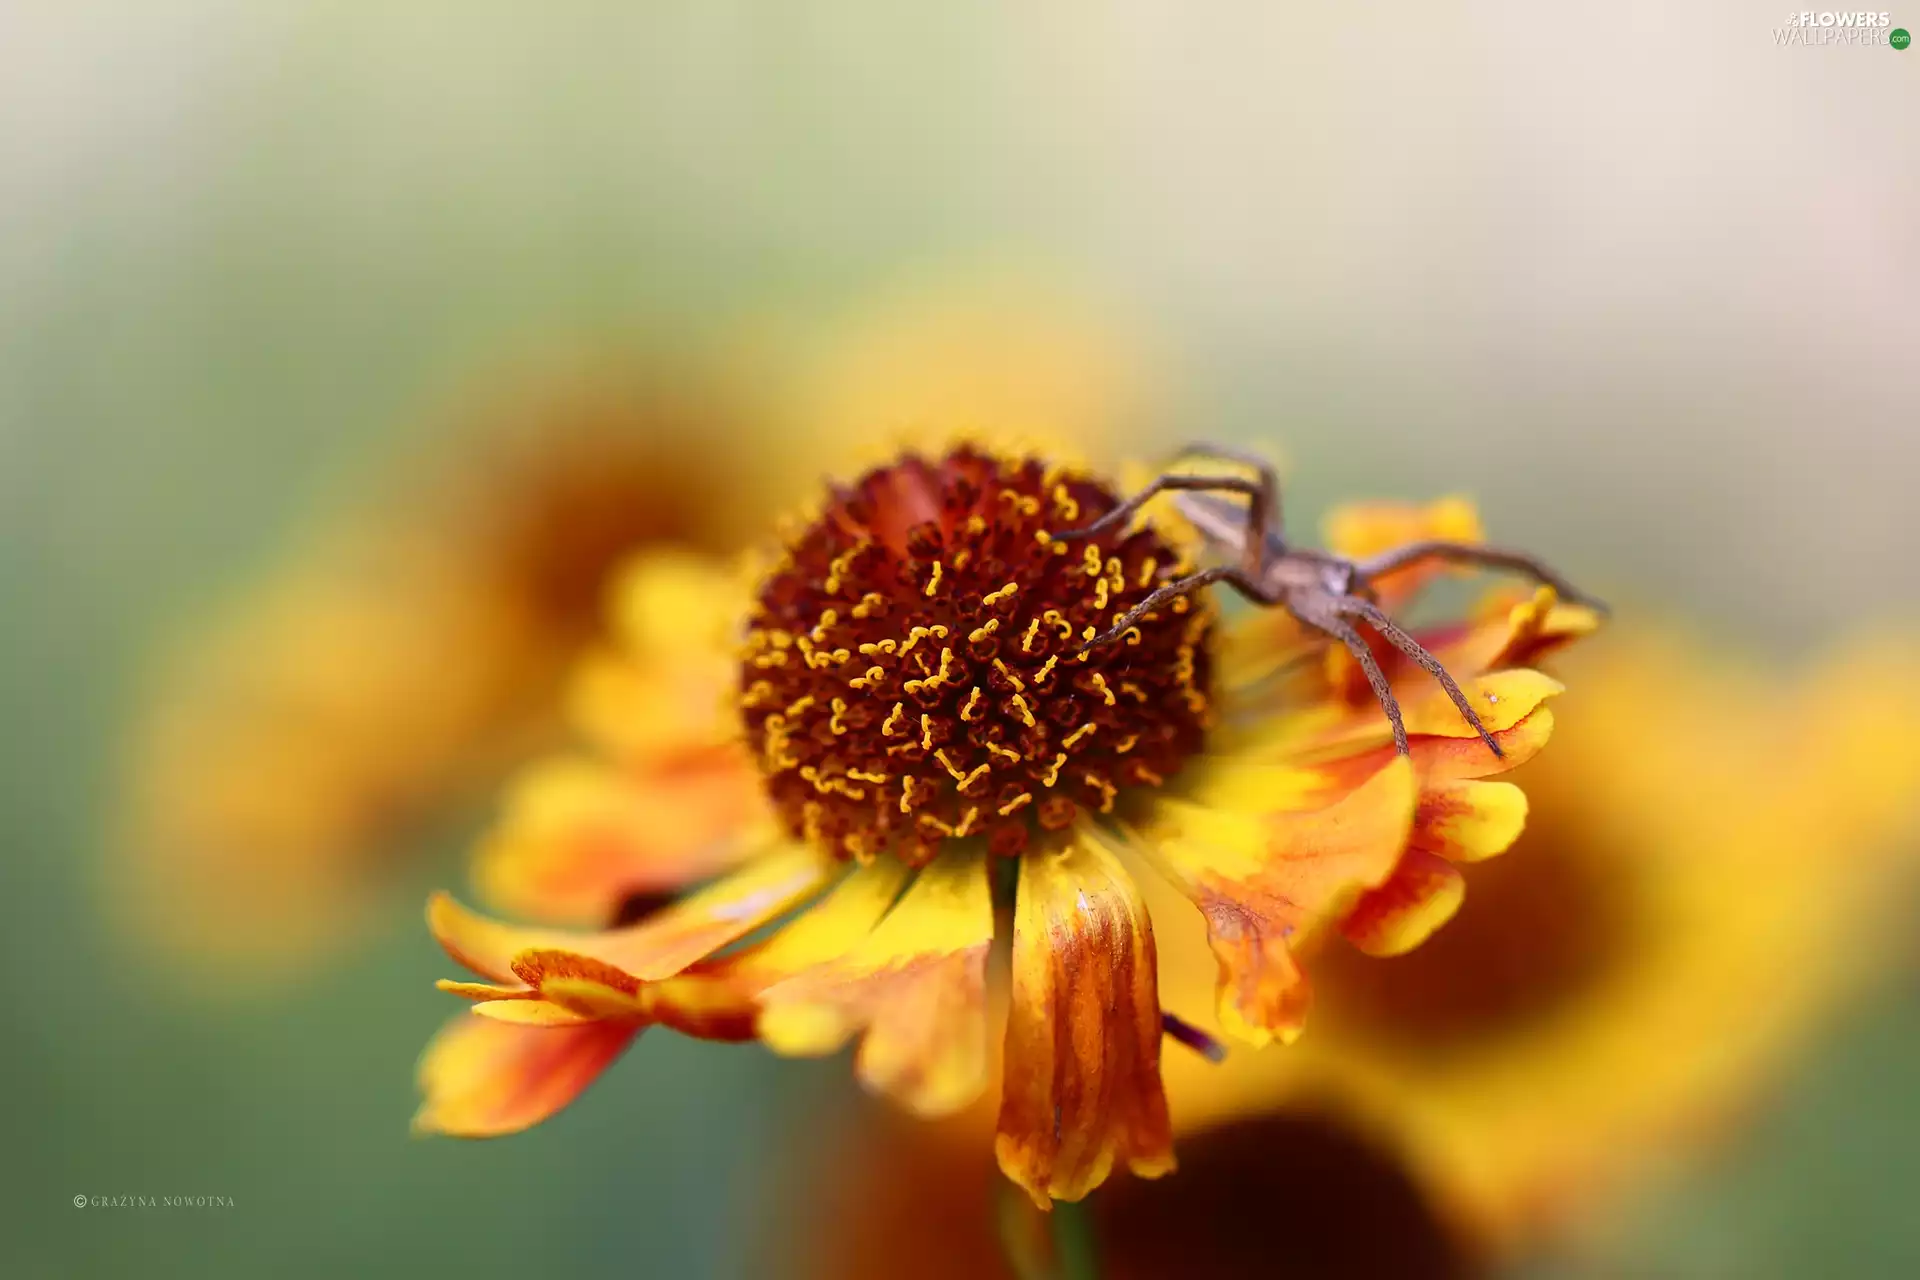 Spider, Helenium, Colourfull Flowers